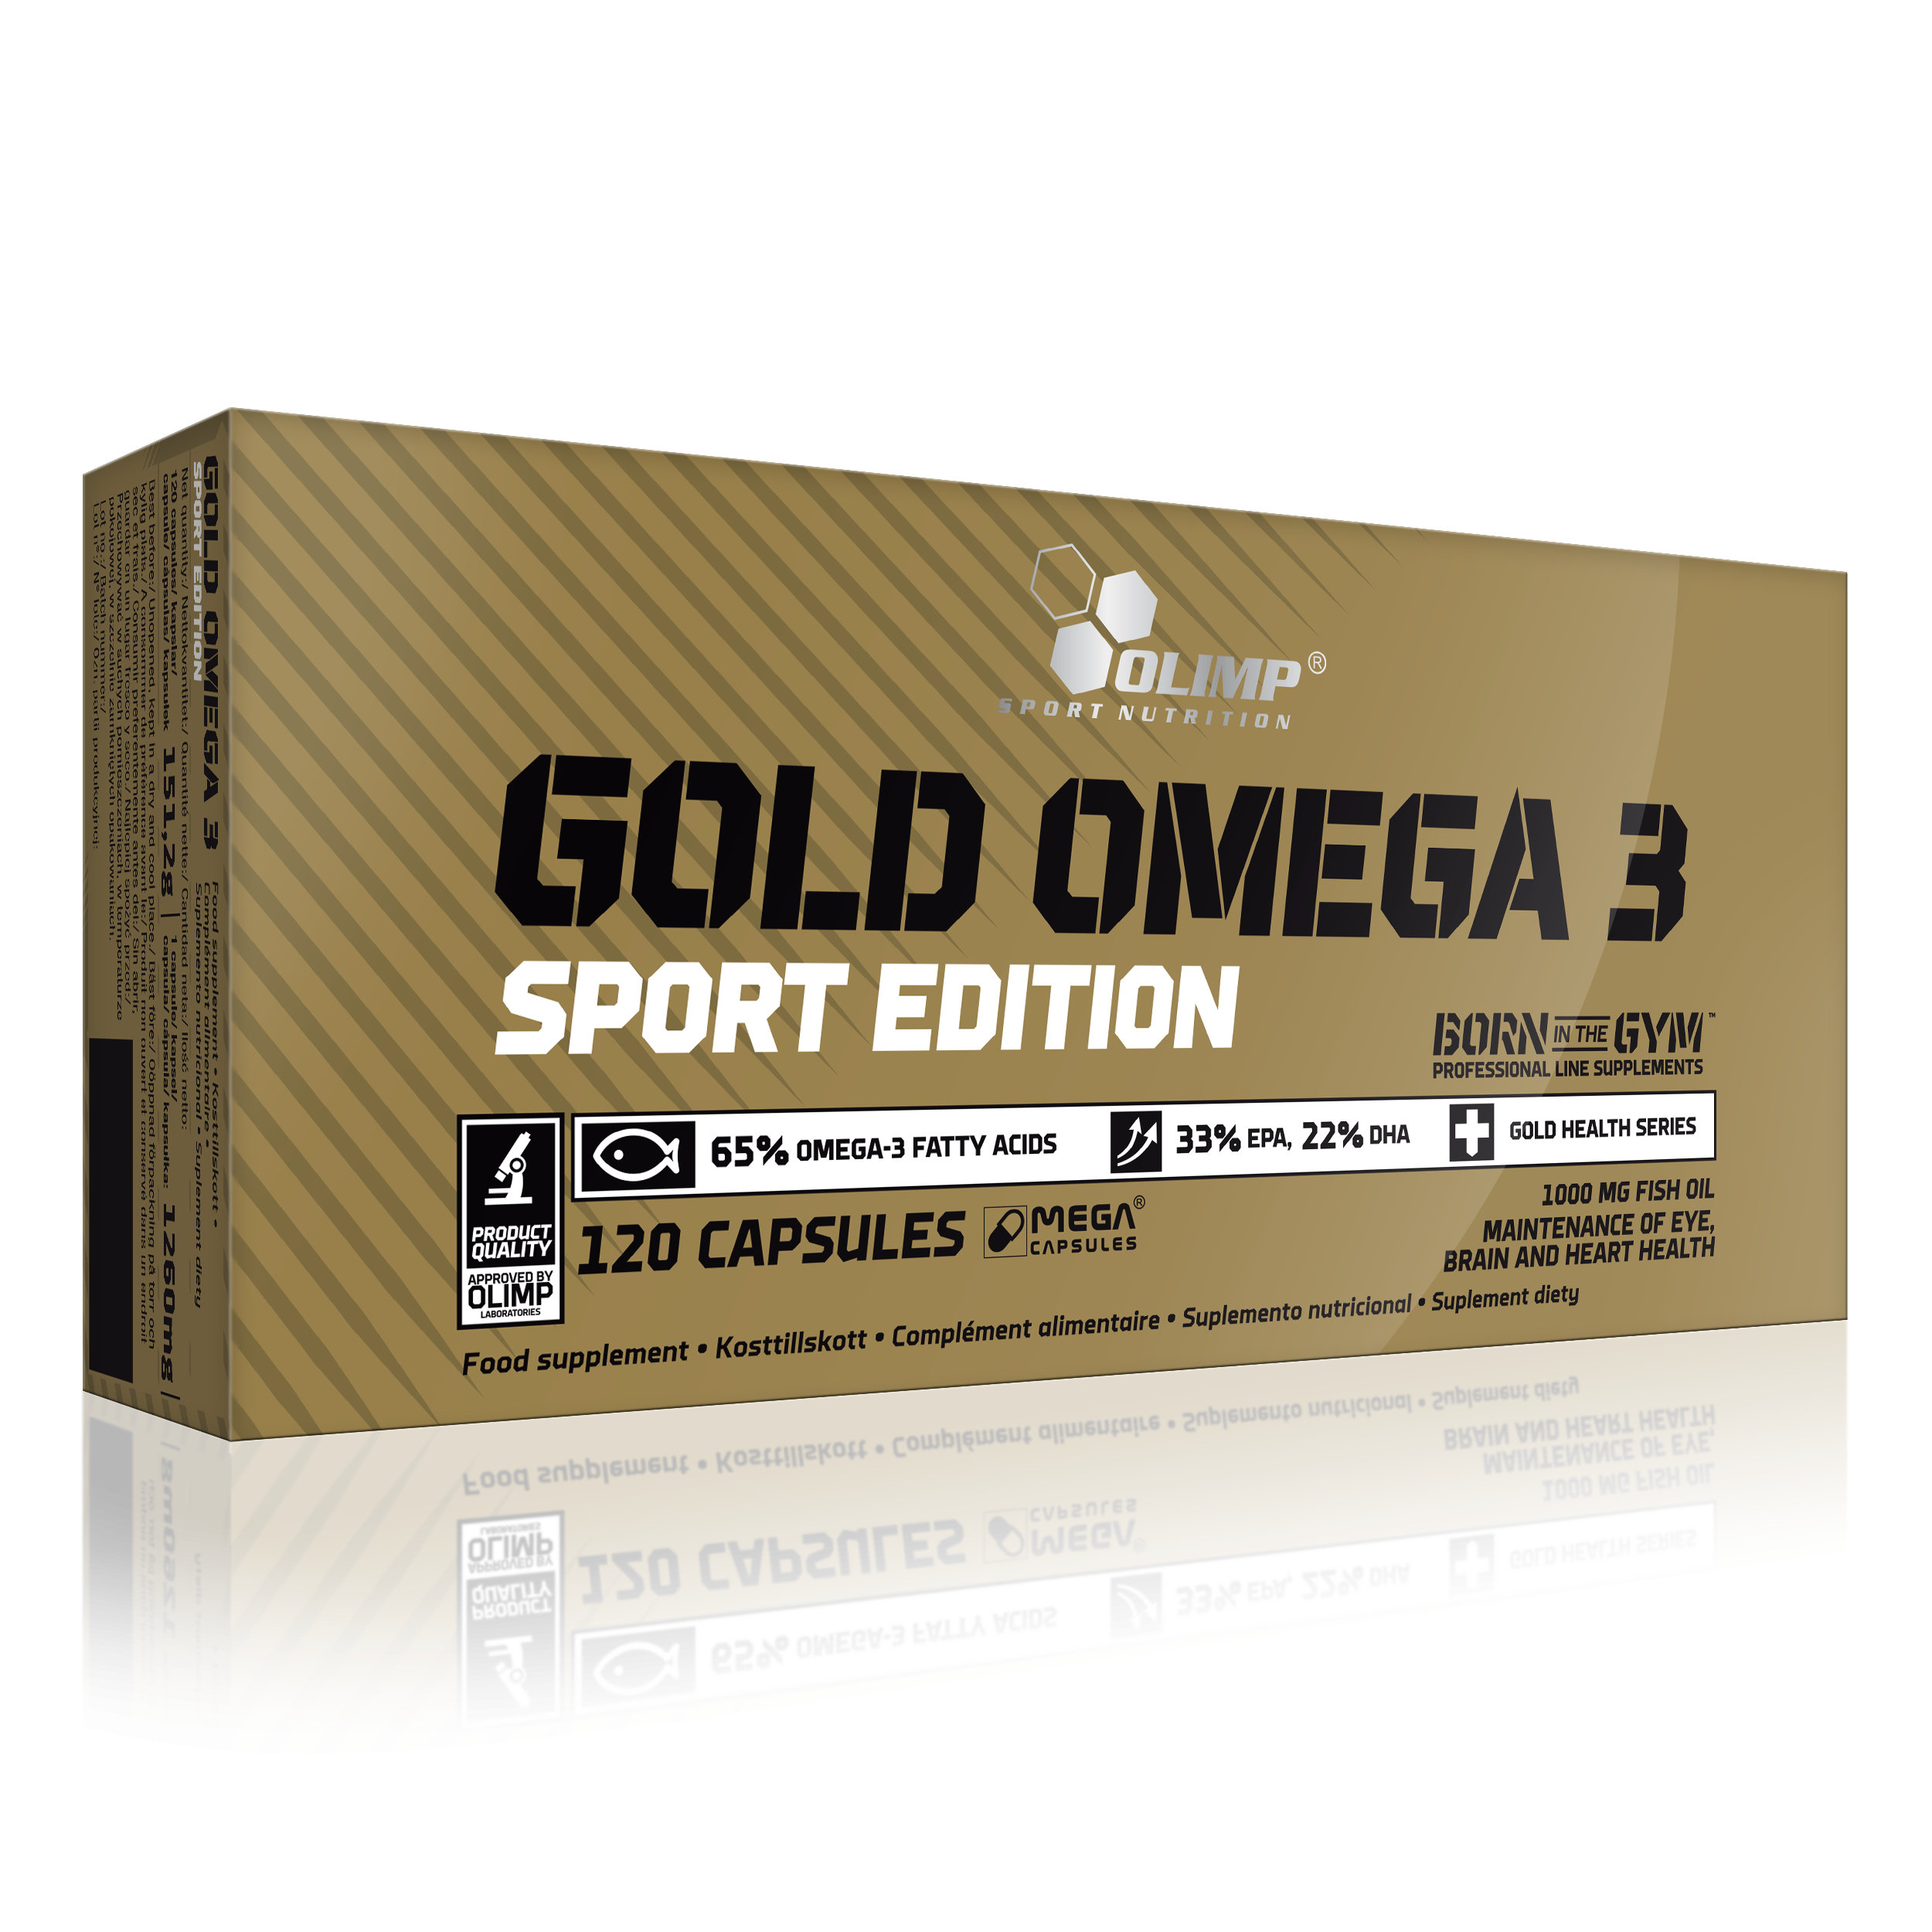 Omega 3 gold капсулы. Olimp Gold Omega 3 d3 + k2 Sport Edition 60 капсул. Gold Omega 3 Olimp. Olimp Gold Omega 3 Sport Edition 120 капс. Olimp Gold Omega 3 d3+k2.